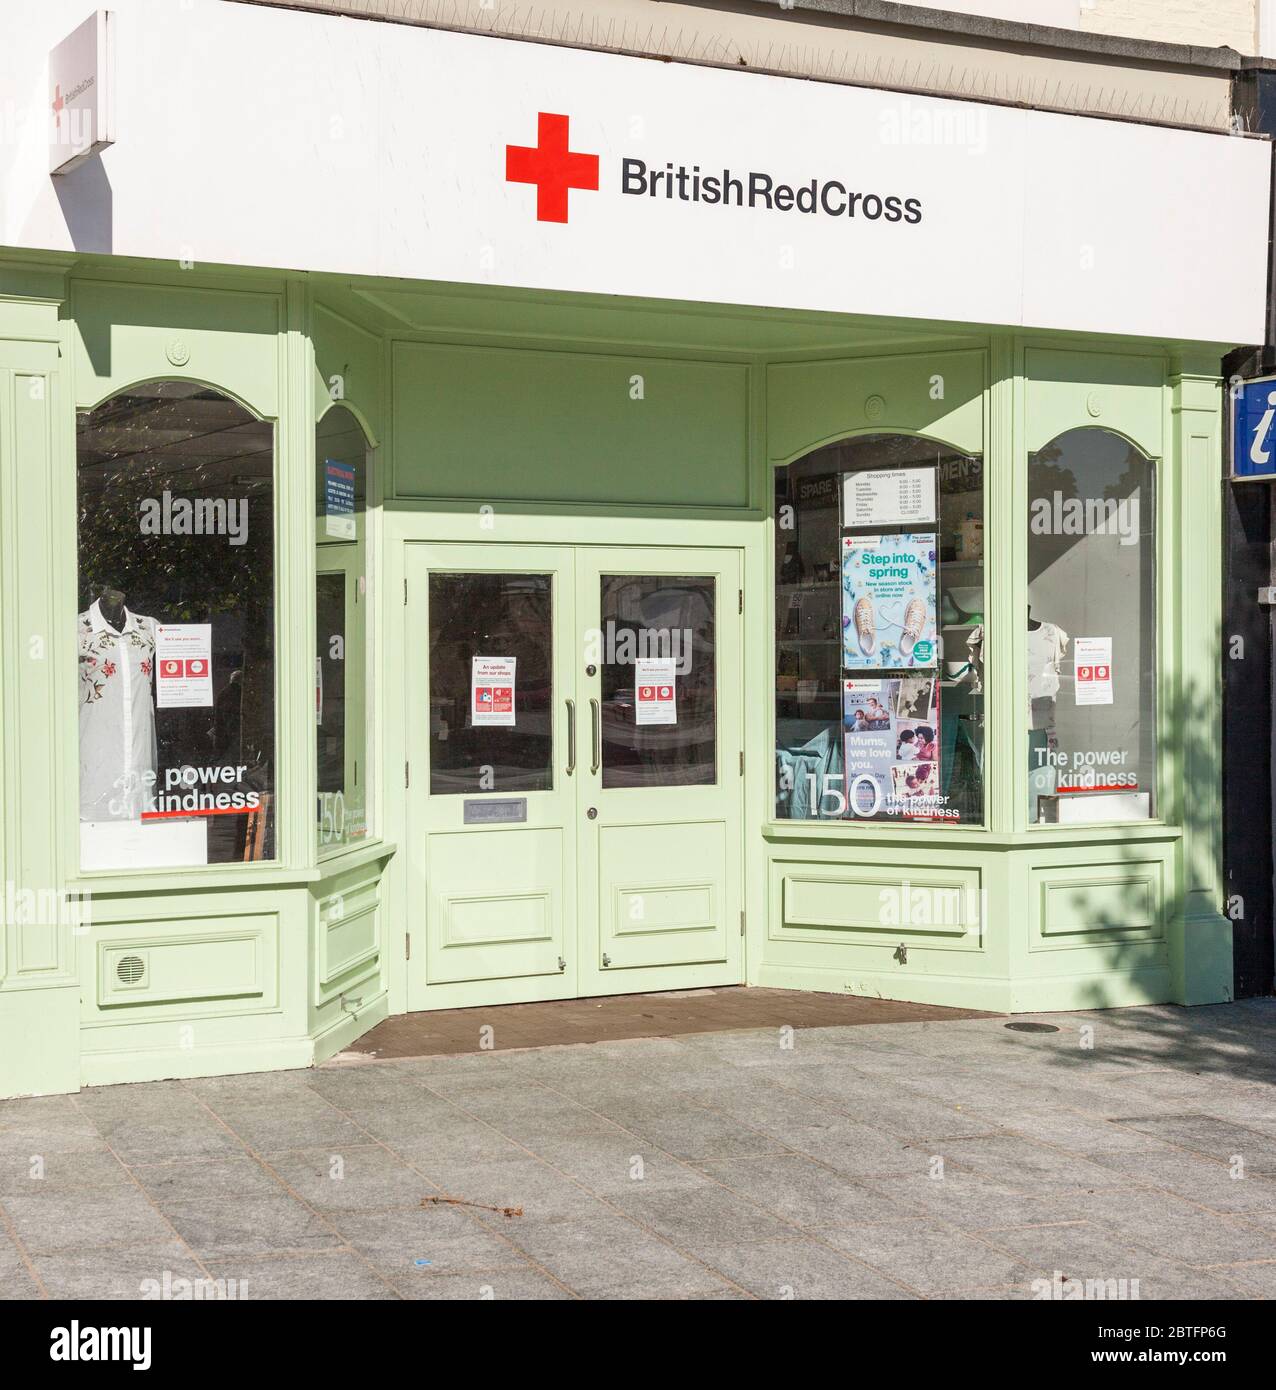 Boutique de charité de la Croix-Rouge britannique à Stockton on Tees, Angleterre, Royaume-Uni Banque D'Images